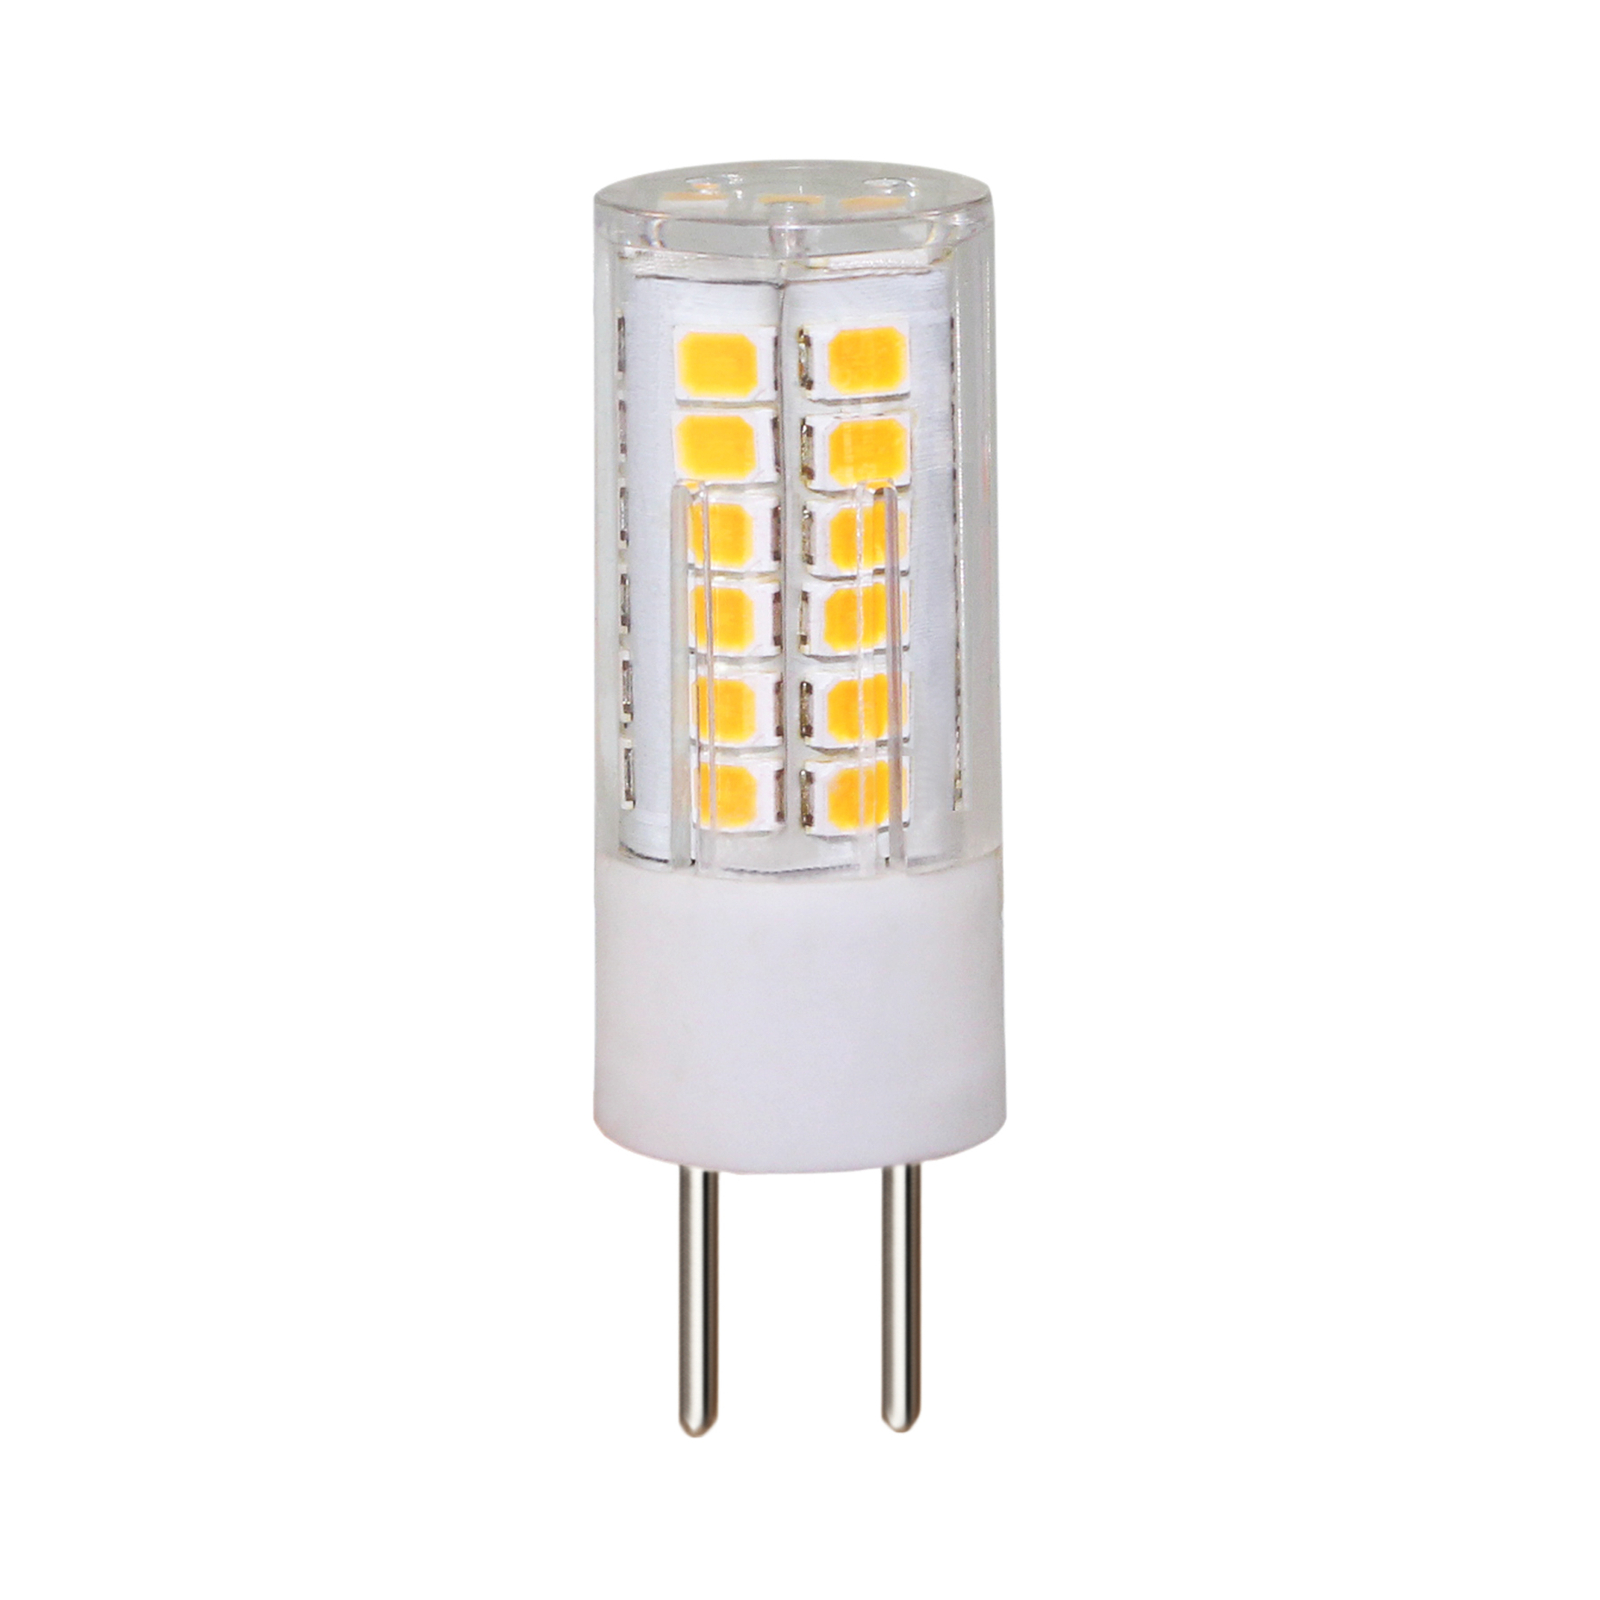 Arcchio bi-pin LED bulb G4 3.4 W 3,000 K